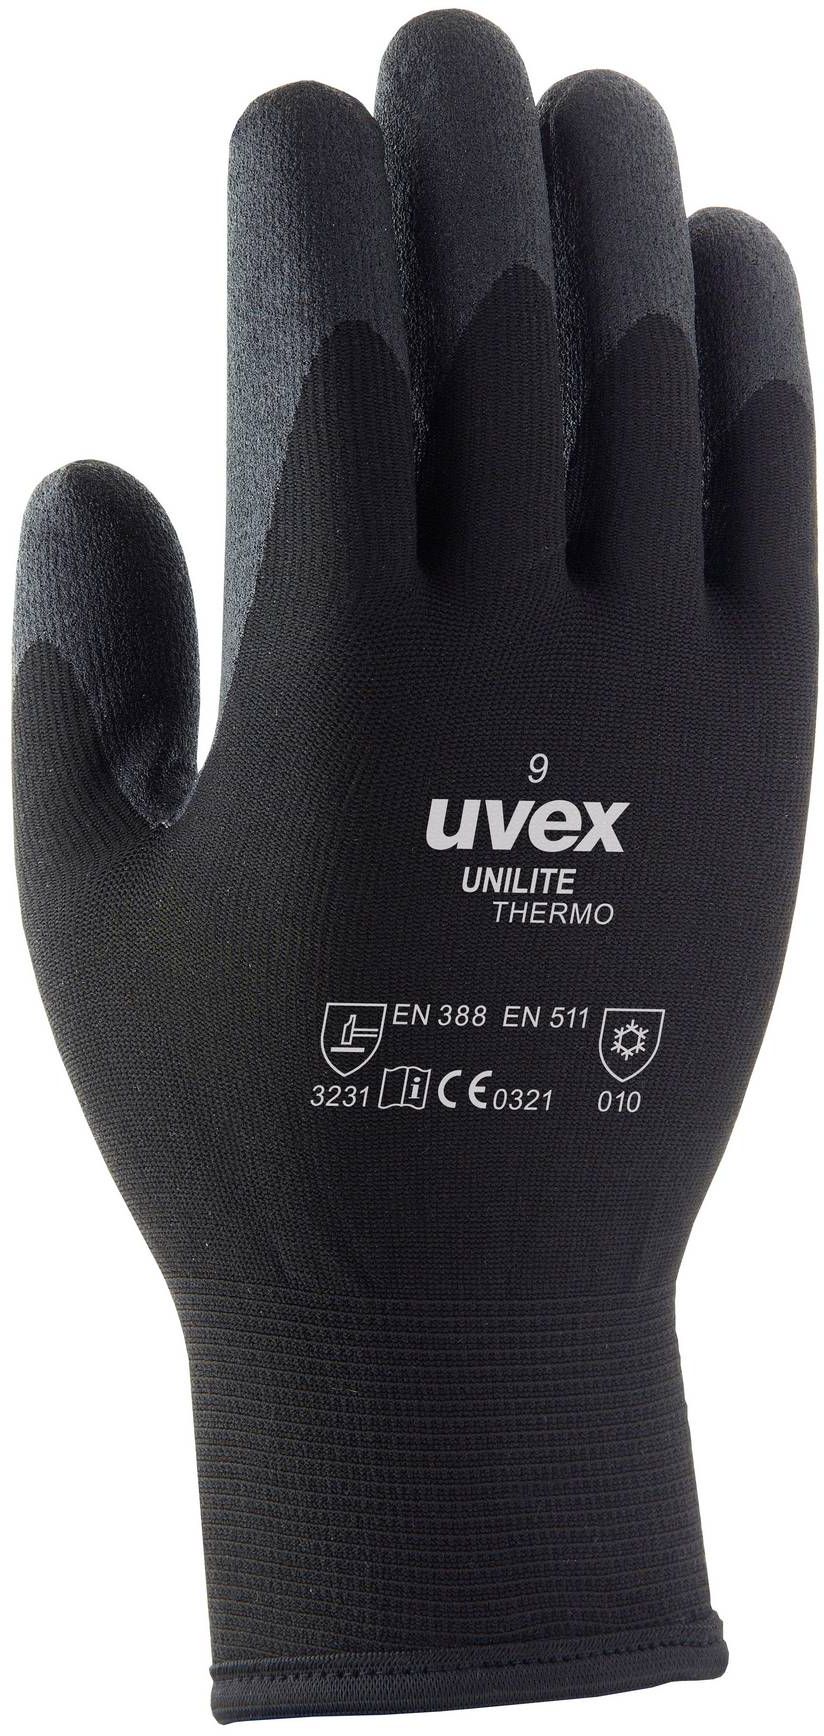 UVEX Winter Handschuh Unilite Thermo Gr. 10, schwarz, Art. 60593 - Arbeitsschutz